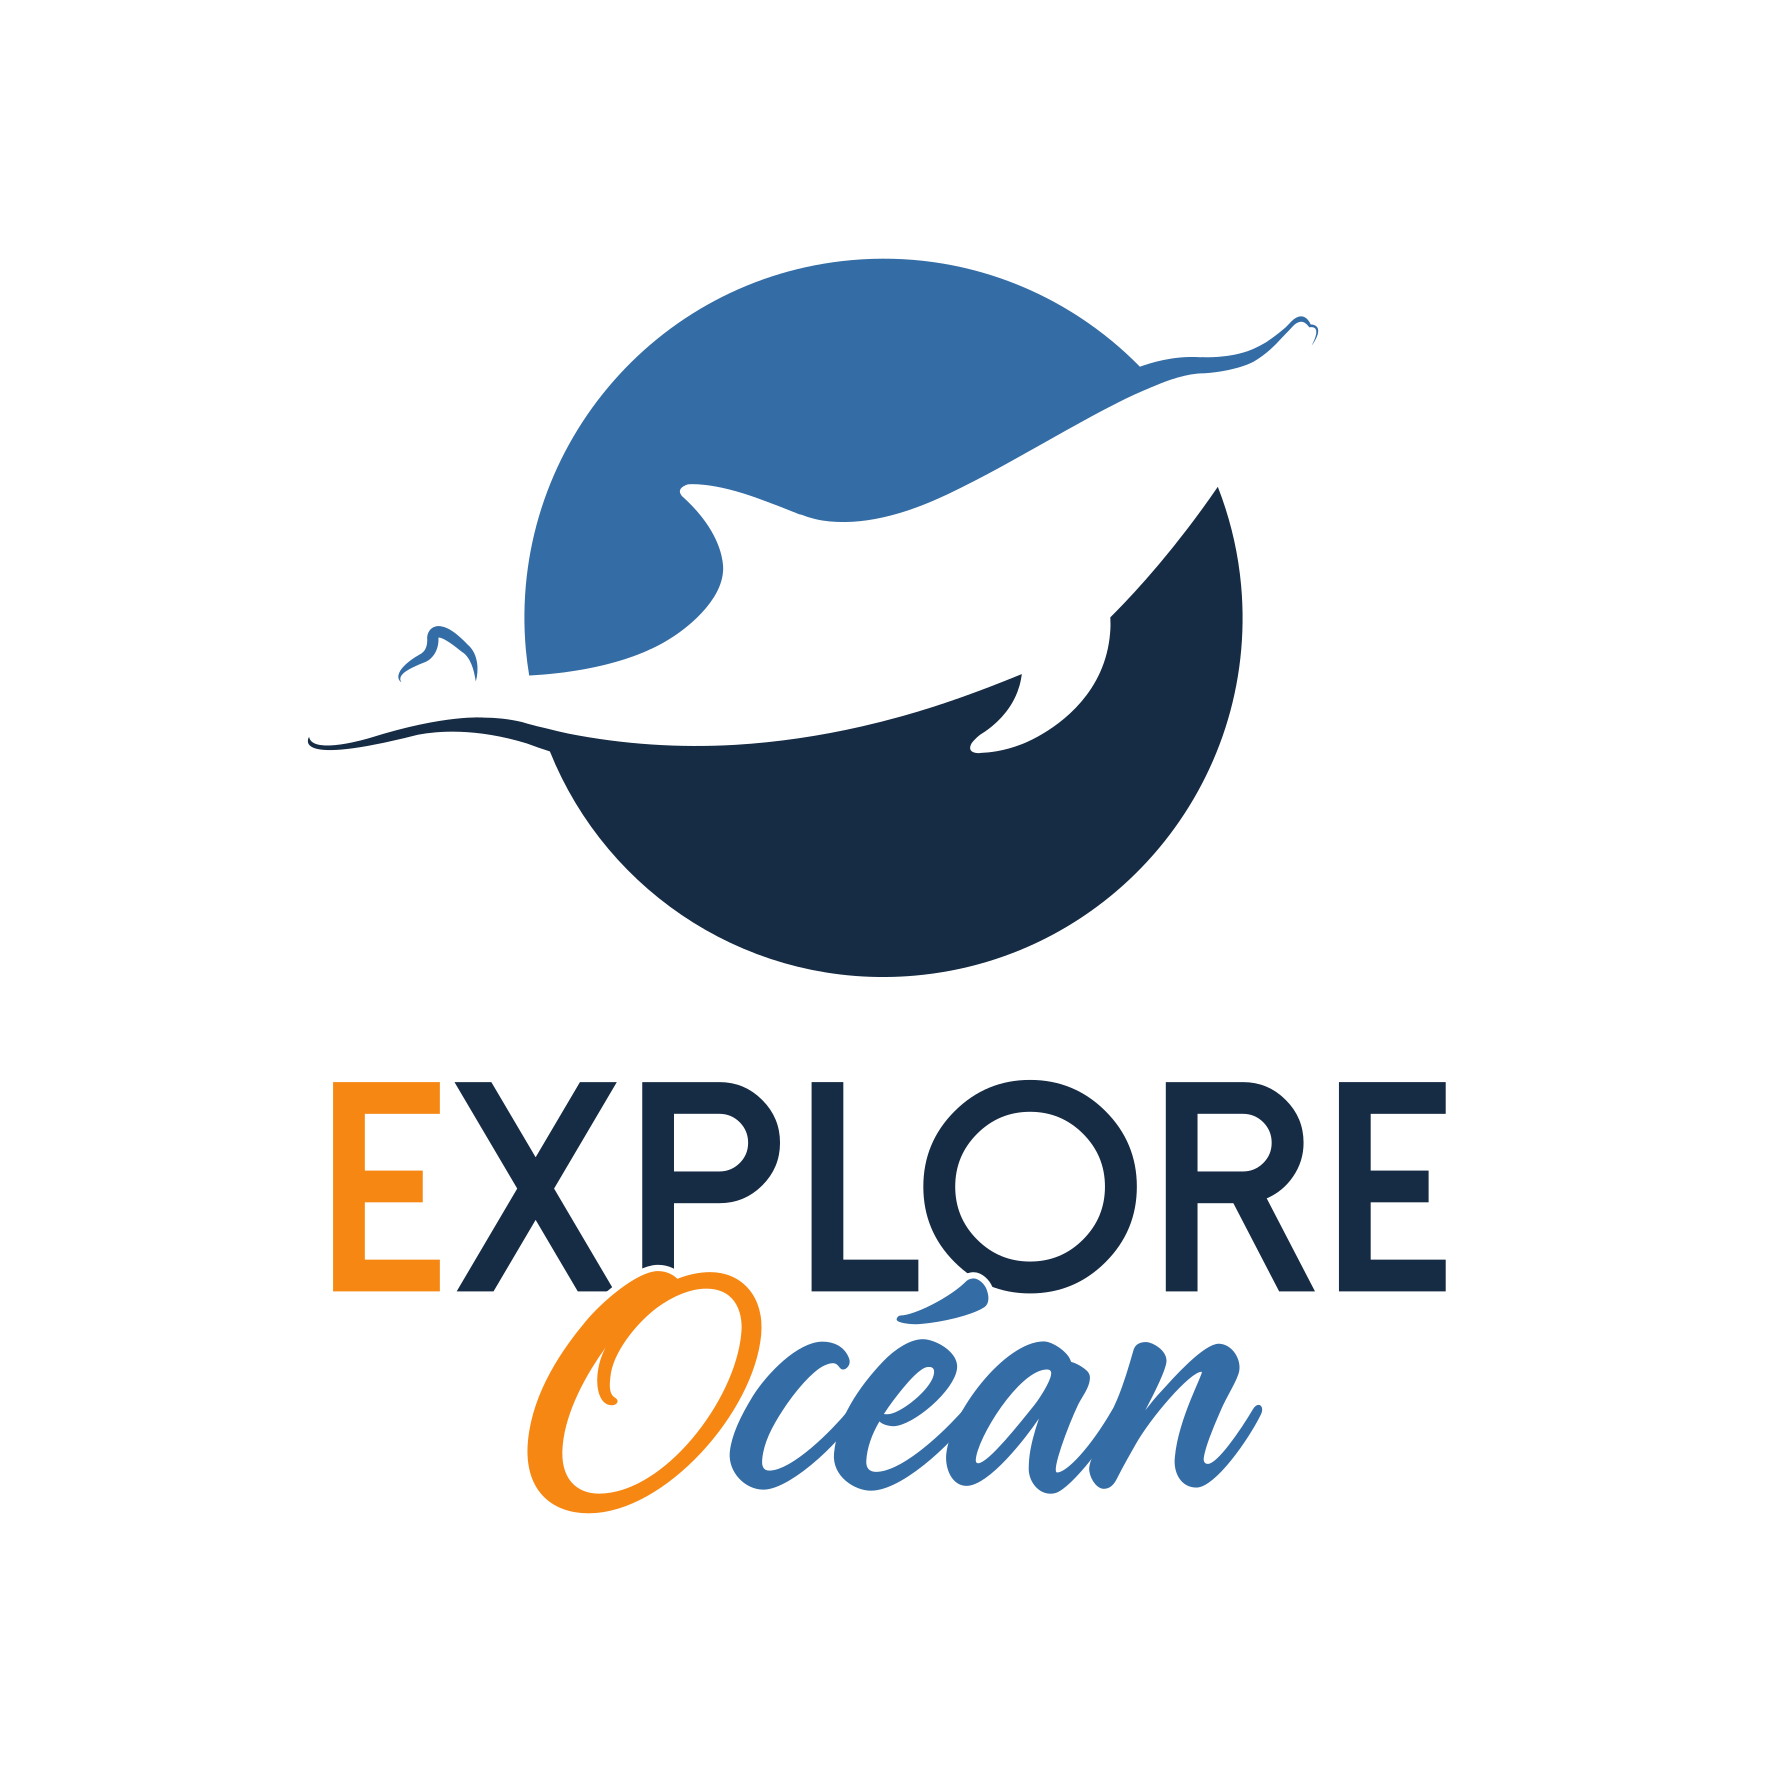 Explore Océan